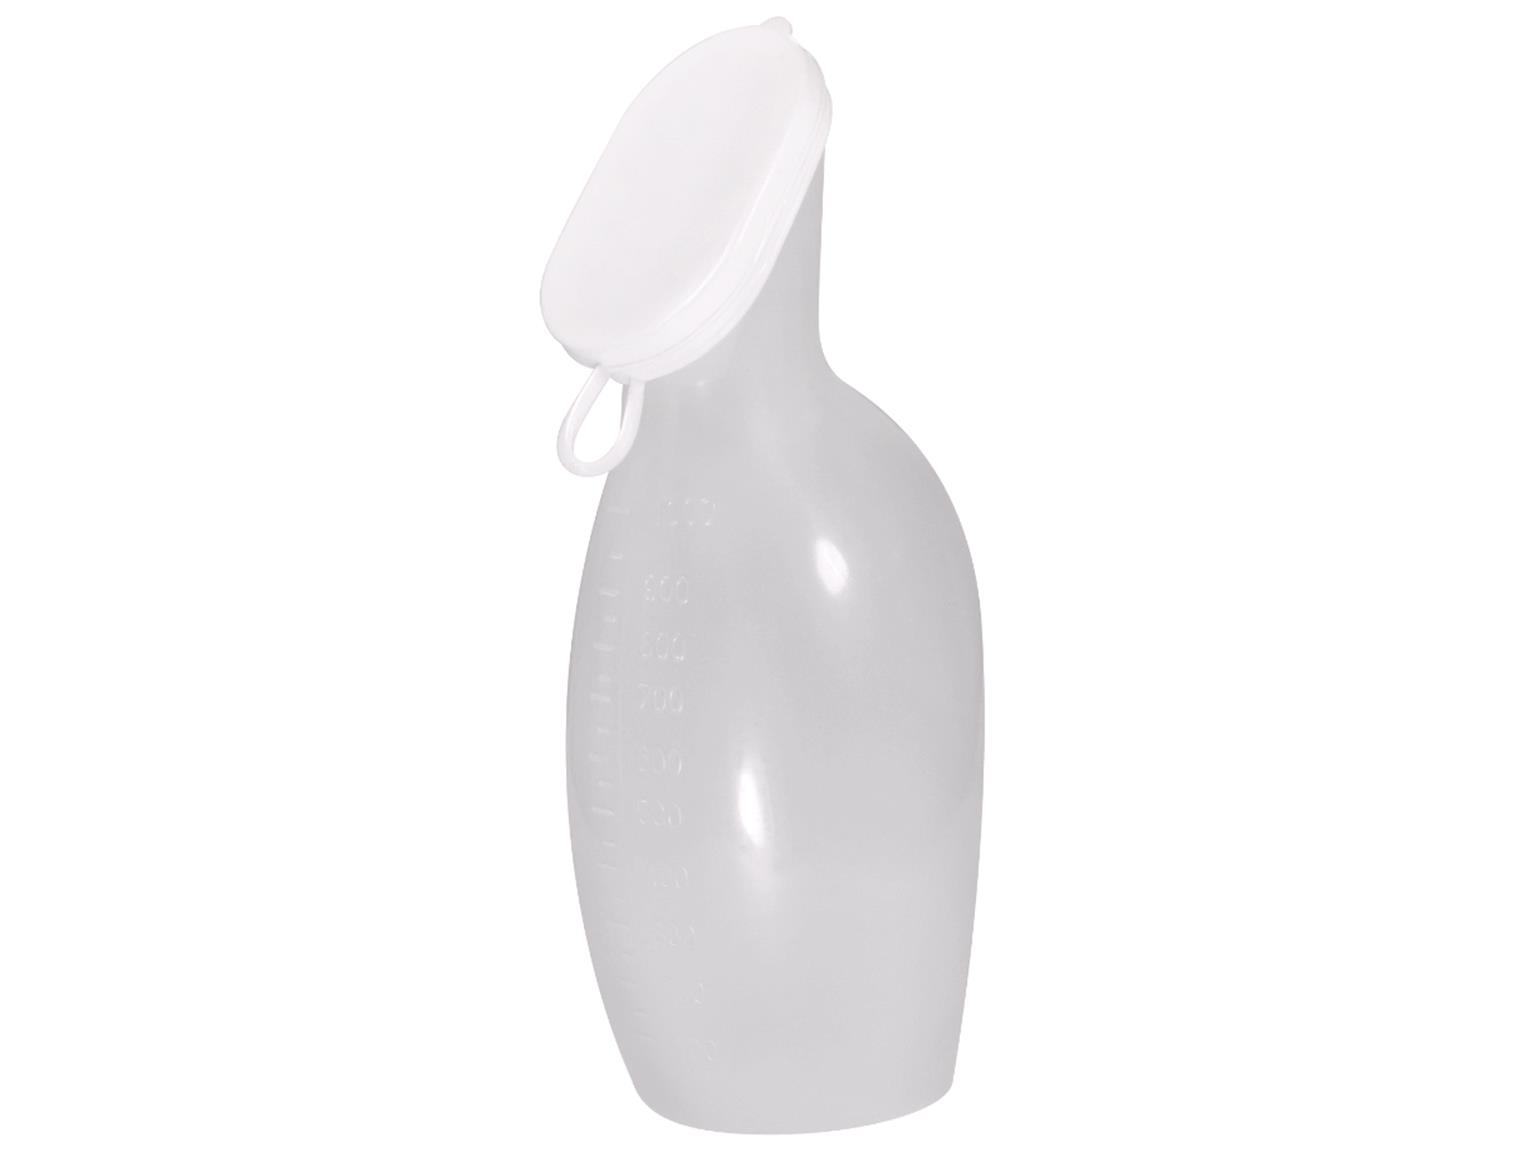 Urinflasche für Frauen aus Polypropylen, durchscheinend mit weissem Deckel